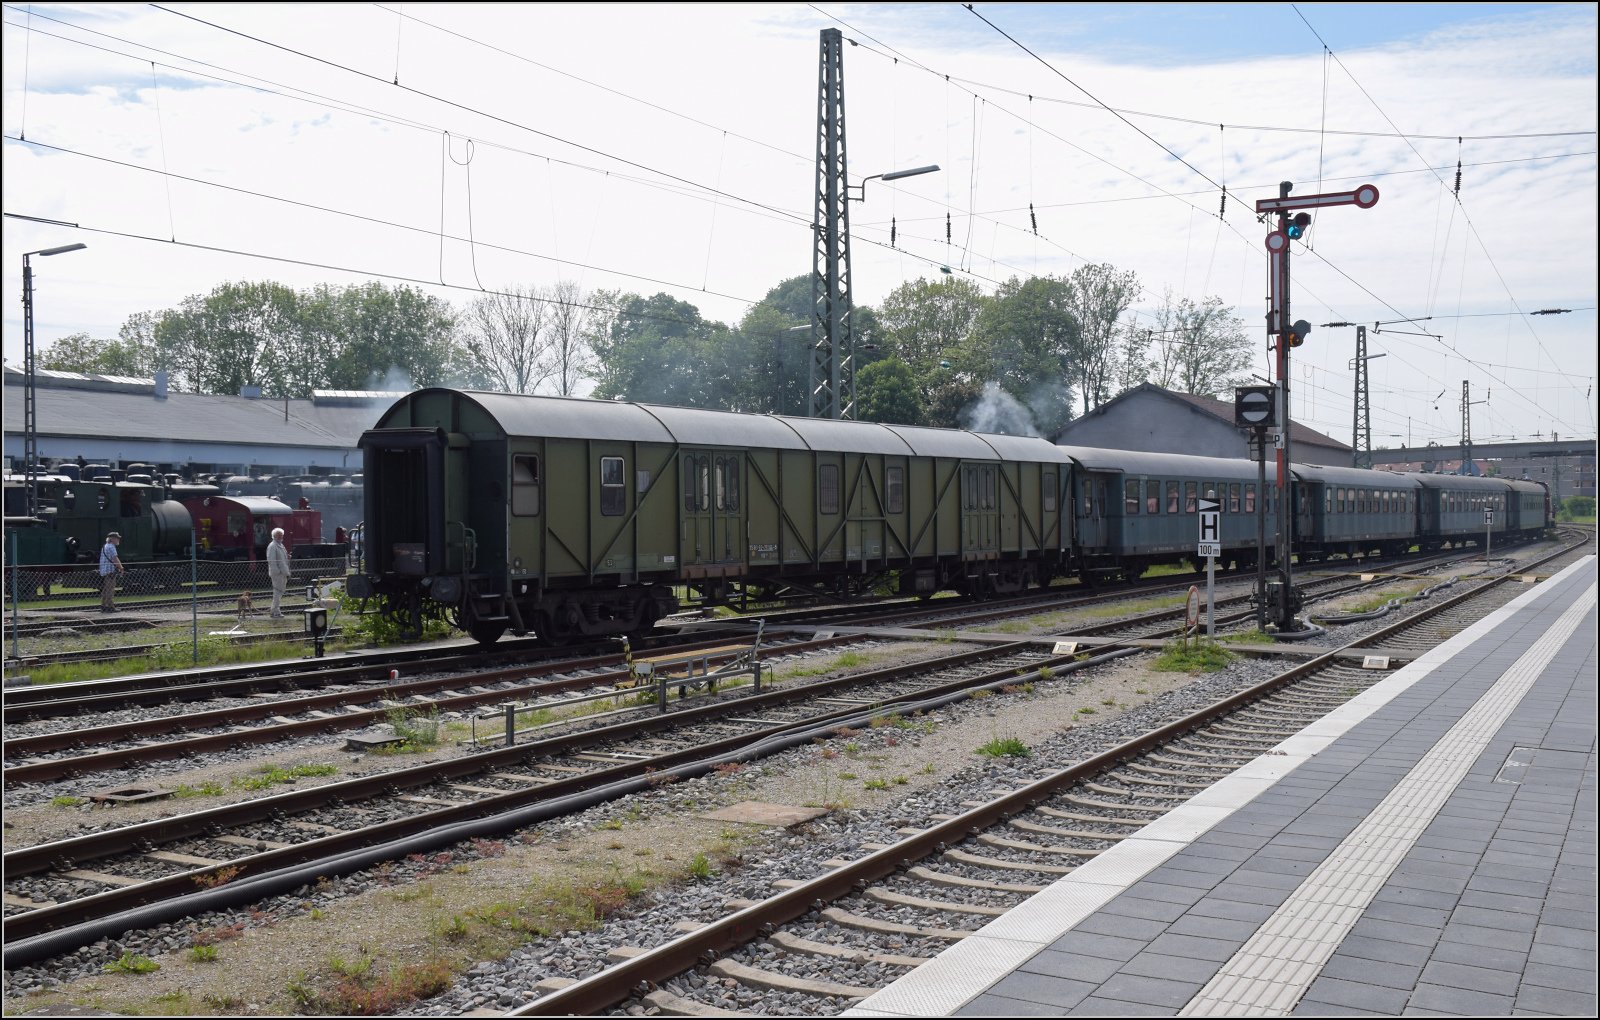 175 Jahre Eisenbahn in Nrdlingen / 55 Jahre Bayrisches Eisenbahnmuseum.

Hilfsgepckwagen MD 75 80 92-29 101-5 D-BYB, ein fast vergessener Anblick bei der Bahn. Mai 2024.